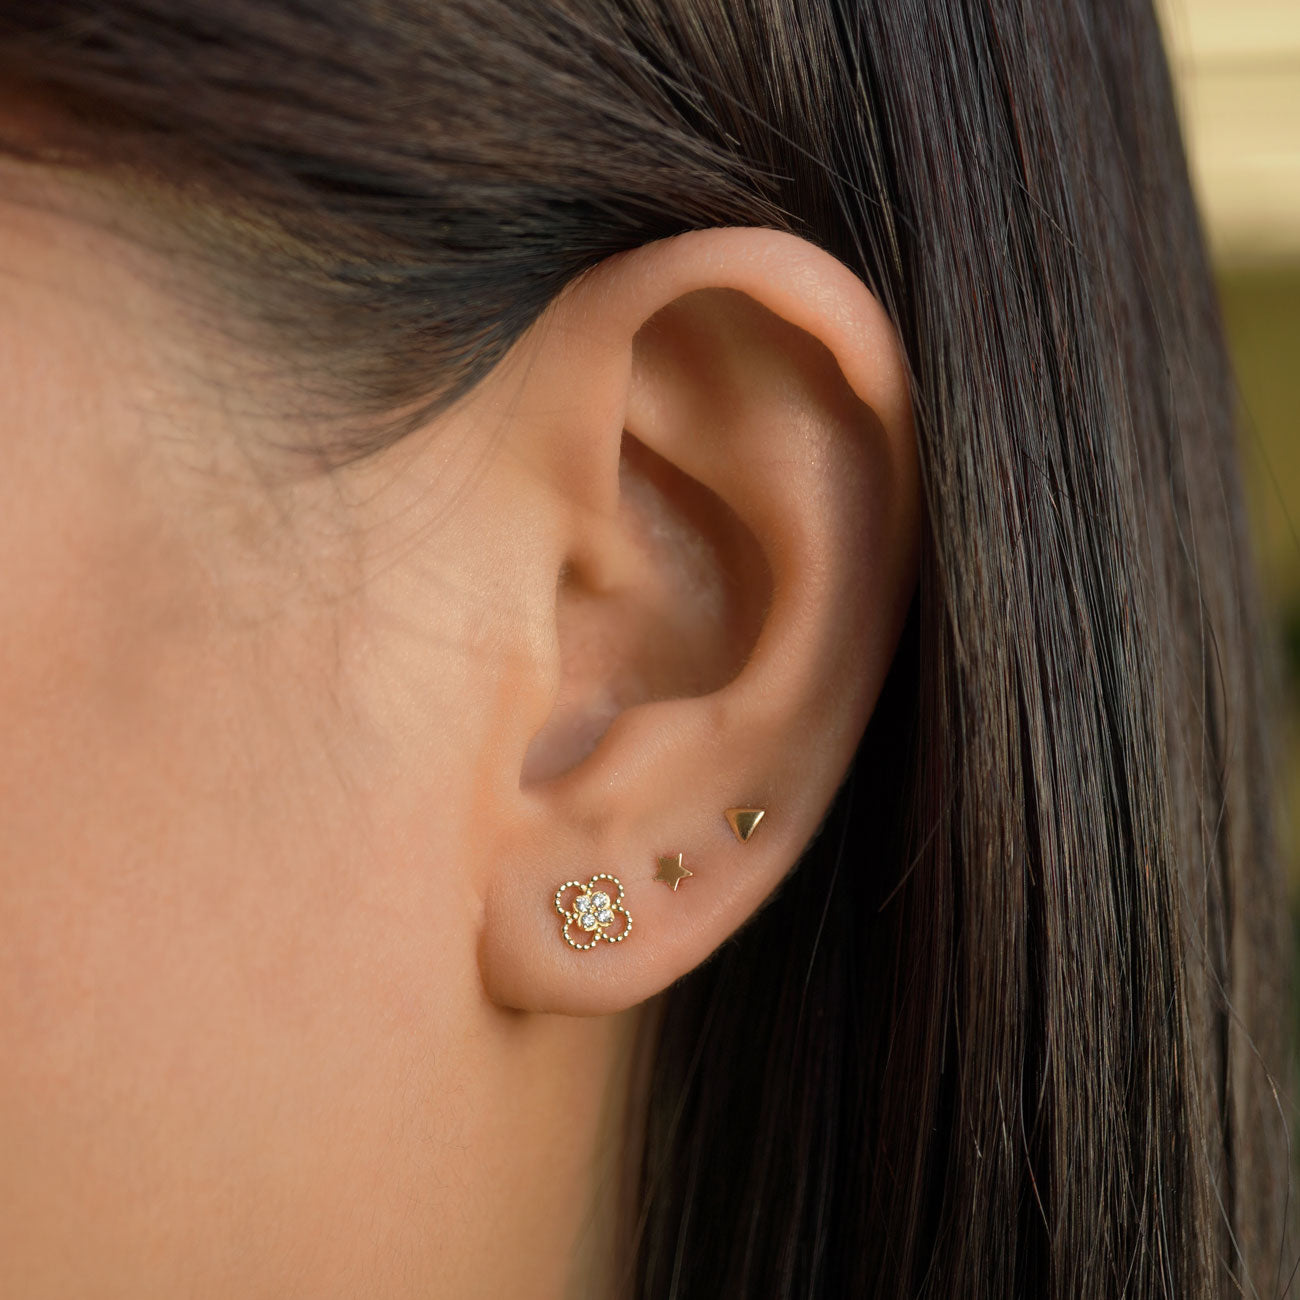 Stud Earrings, Helix Cartilage Second Piercing, Tiny Earrings – AMYO Jewelry